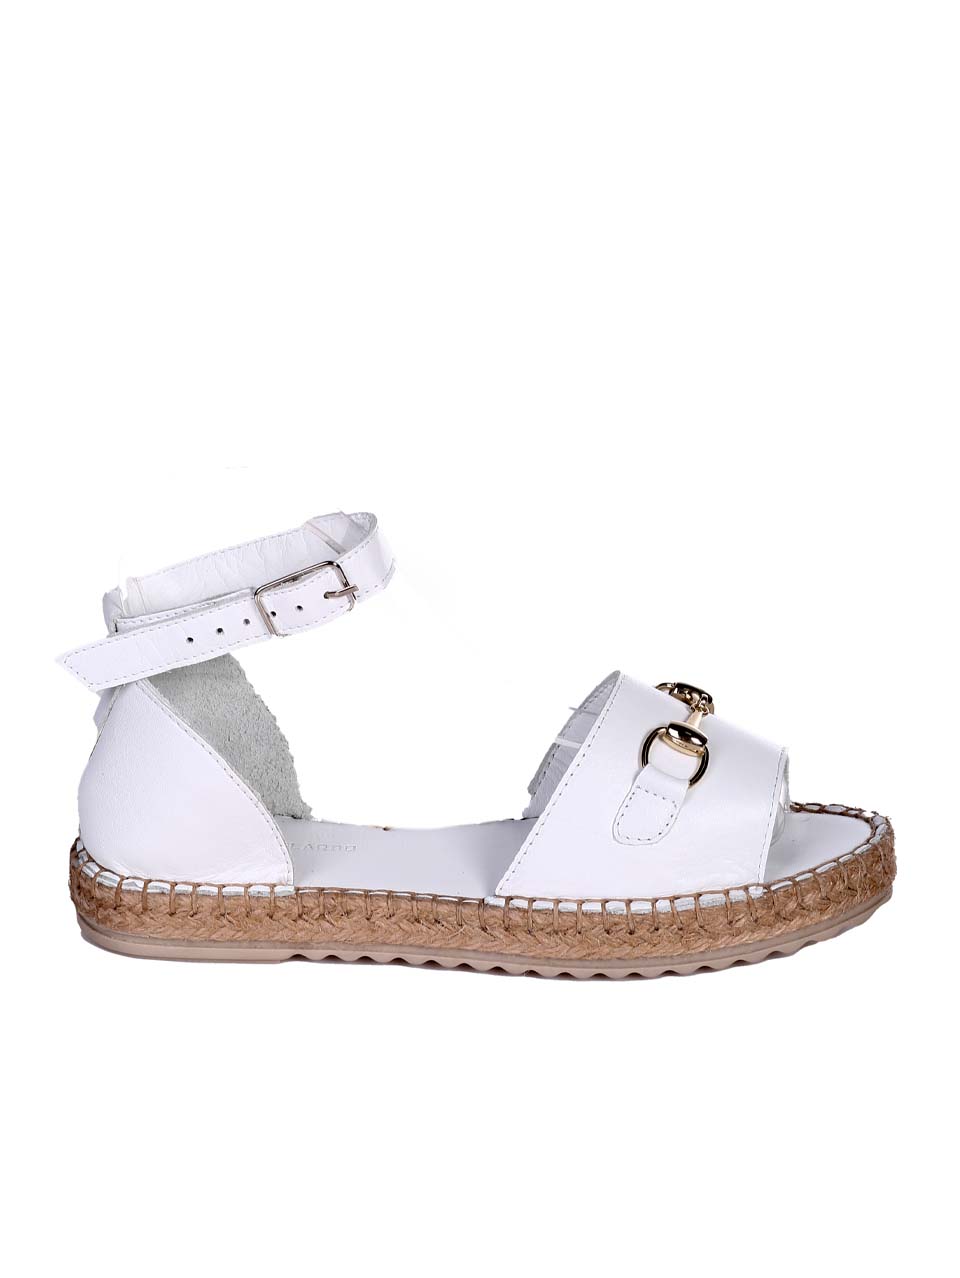 Ежедневни дамски сандали от естествена кожа в бяло 4AT-24351 white